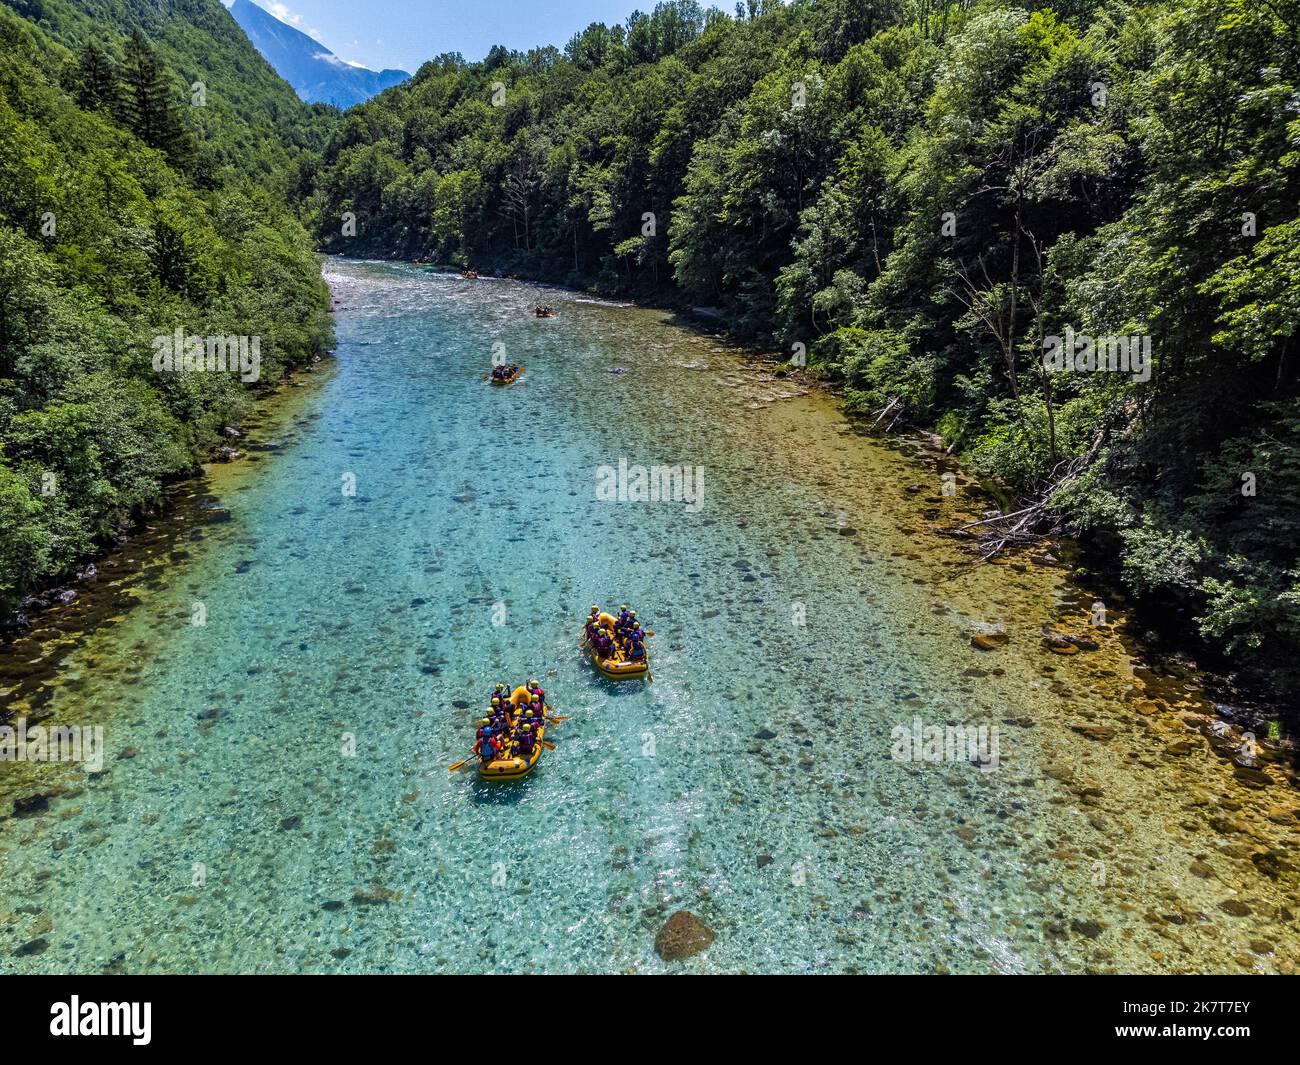 Valle Soca, Slovenia - veduta aerea del fiume alpino smeraldo Soca con barche da rafting che scendono lungo il fiume in una giornata estiva di sole con verde f Foto Stock